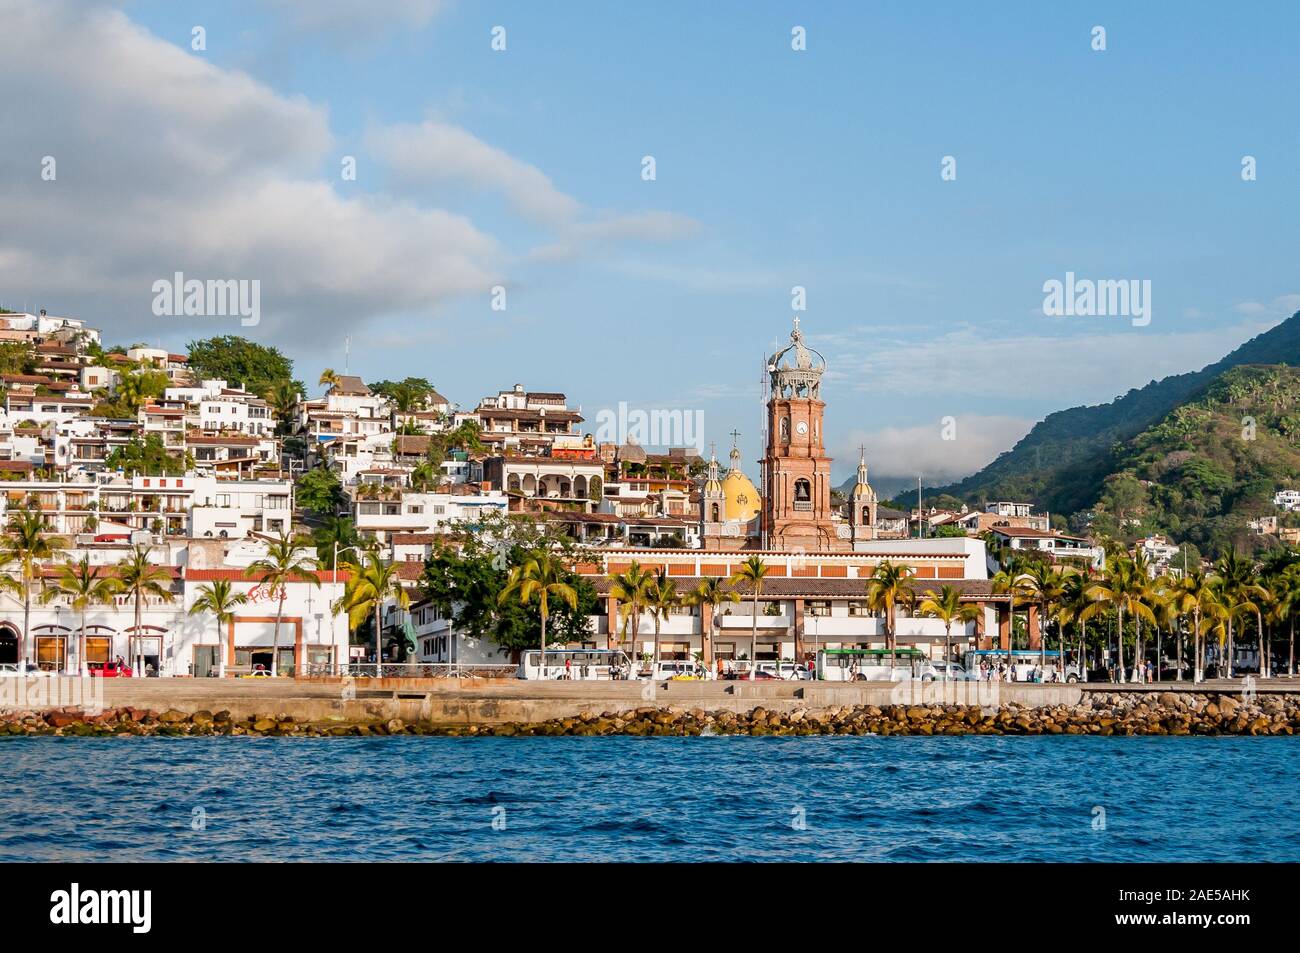 Vue sur le centre-ville de Puerto Vallarta comme vu à partir de l'eau, Notre Dame de Guadalupe et les clochers de l'église du dôme d'or, les piétons sur le Malecon front de mer. Banque D'Images